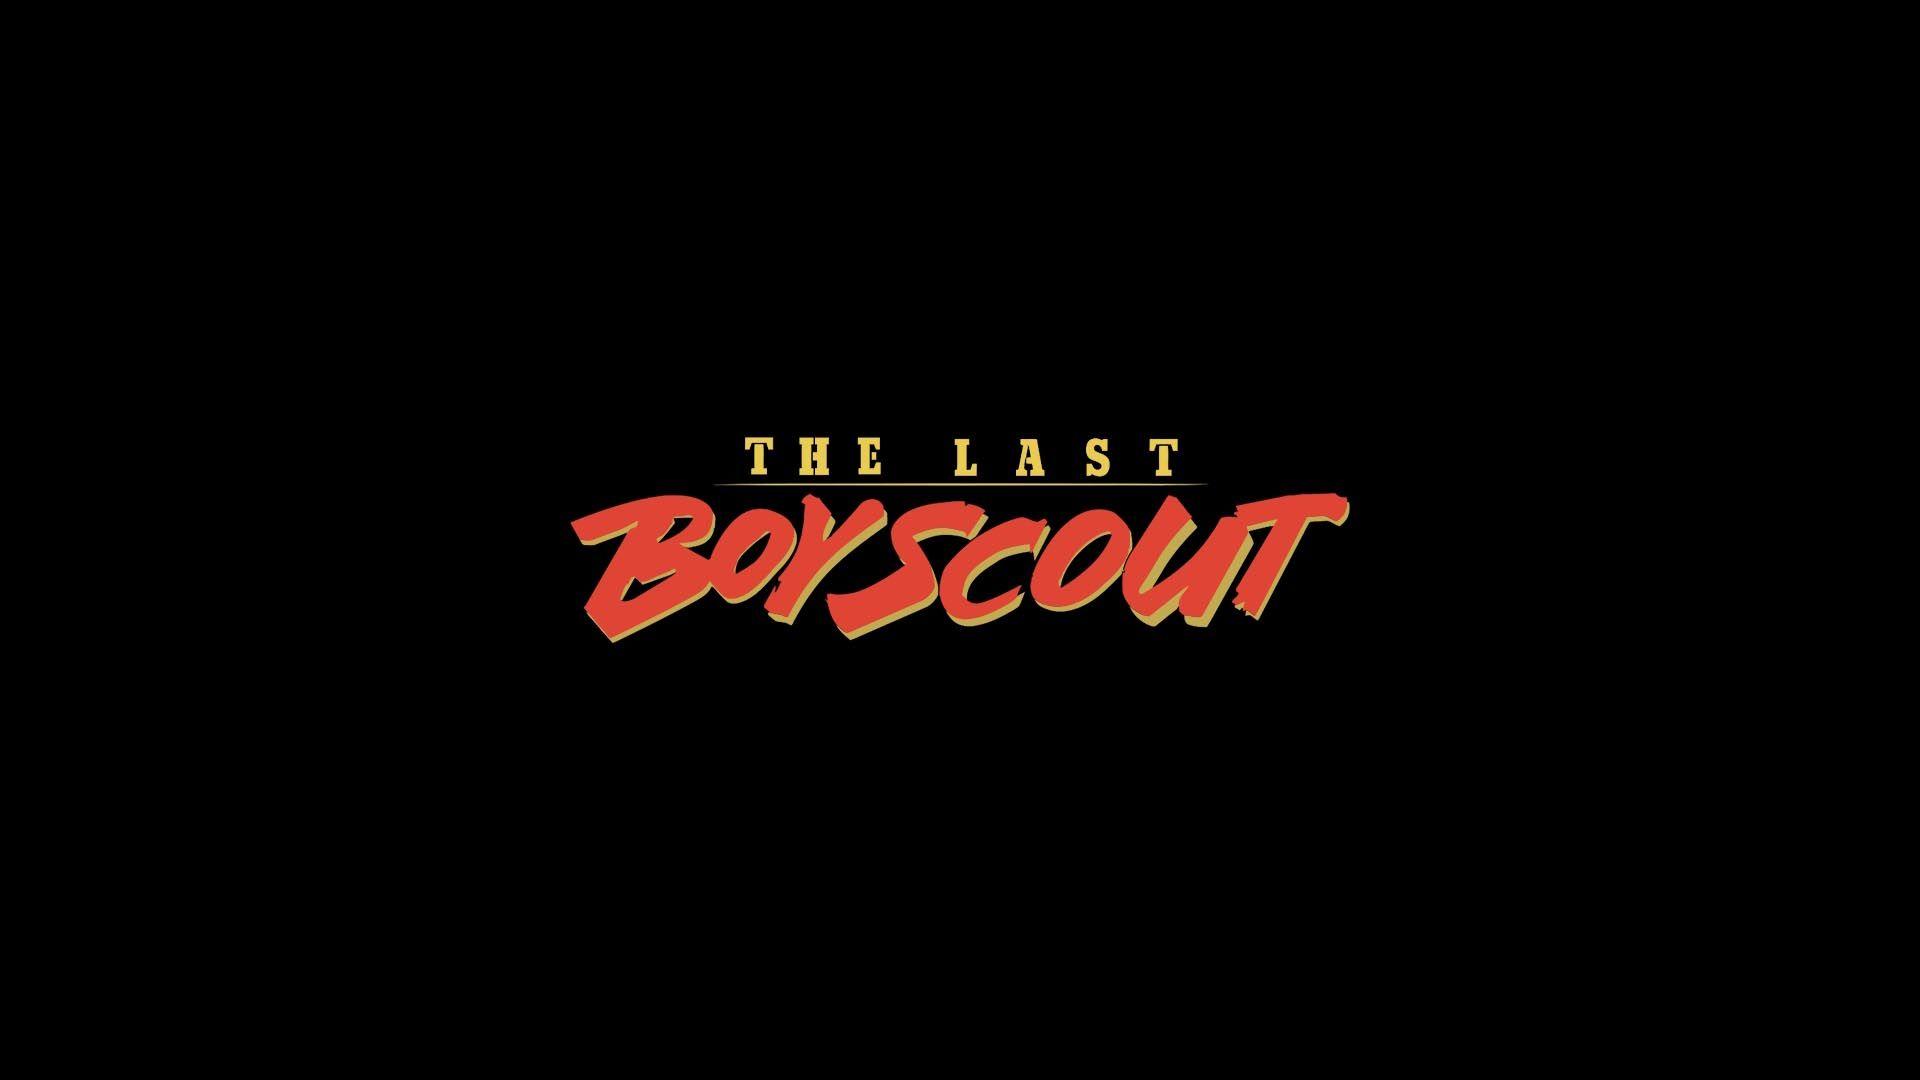 The Last Boy Scout Full HD Wallpaper